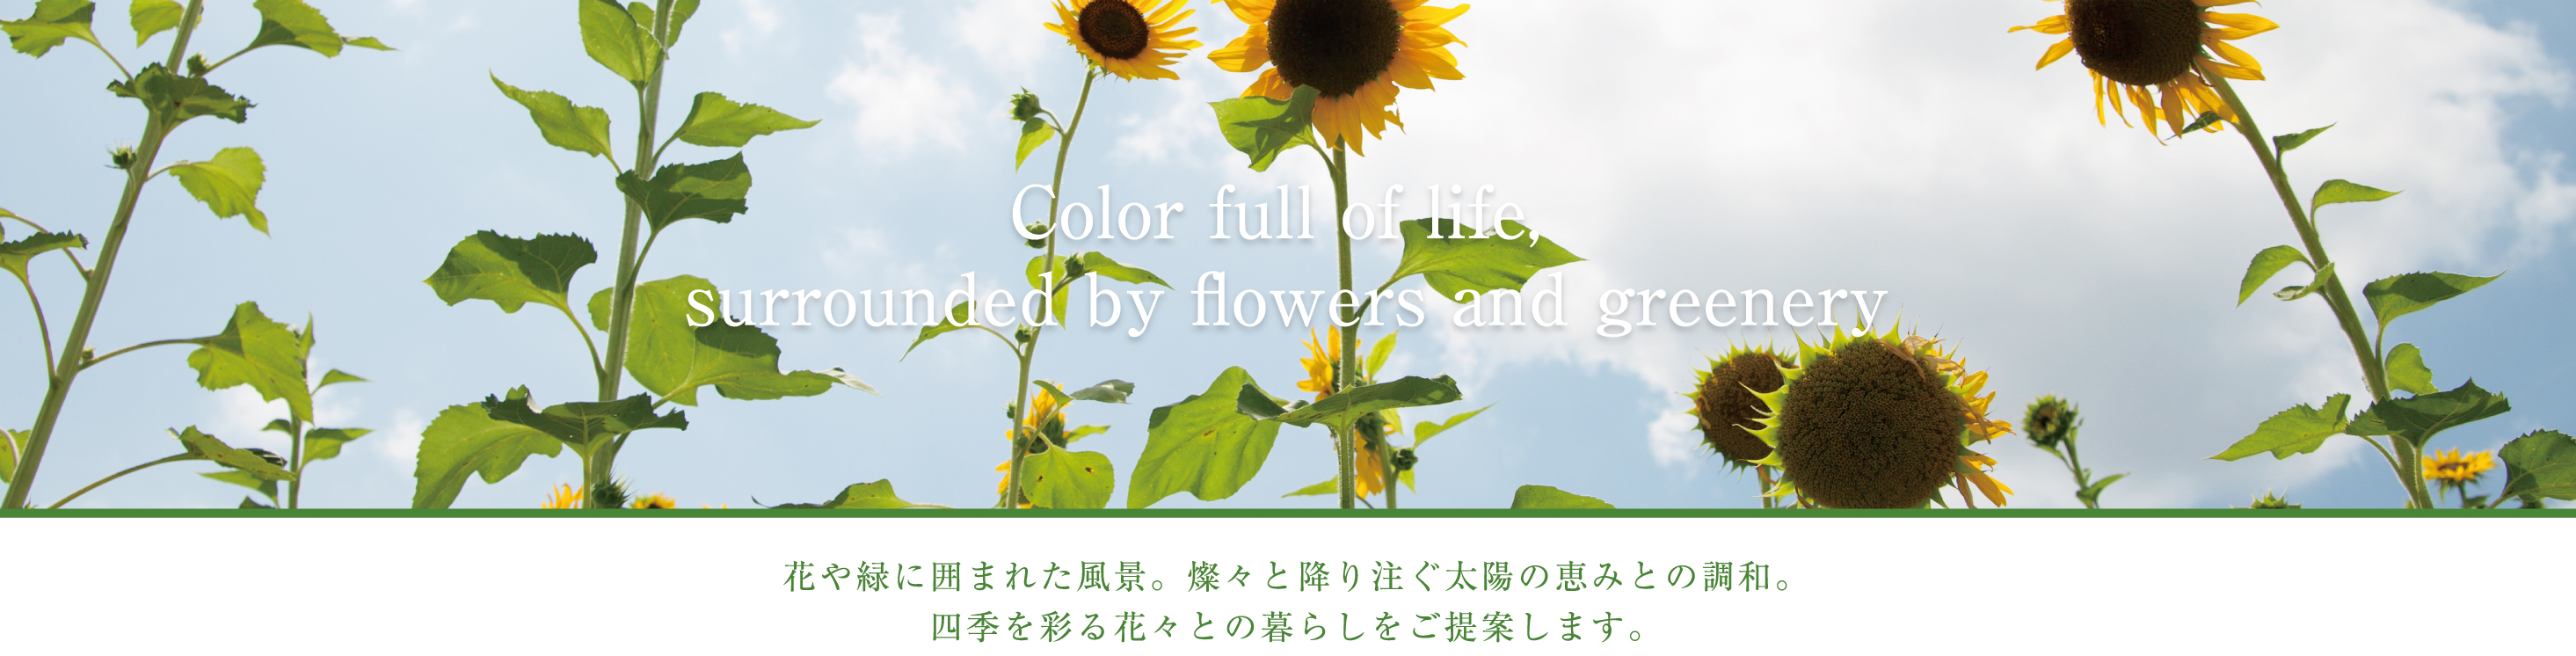 花や緑に囲まれた風景。燦々と降り注ぐ太陽の恵みとの調和。四季を彩る花々との暮らしをご提案します。